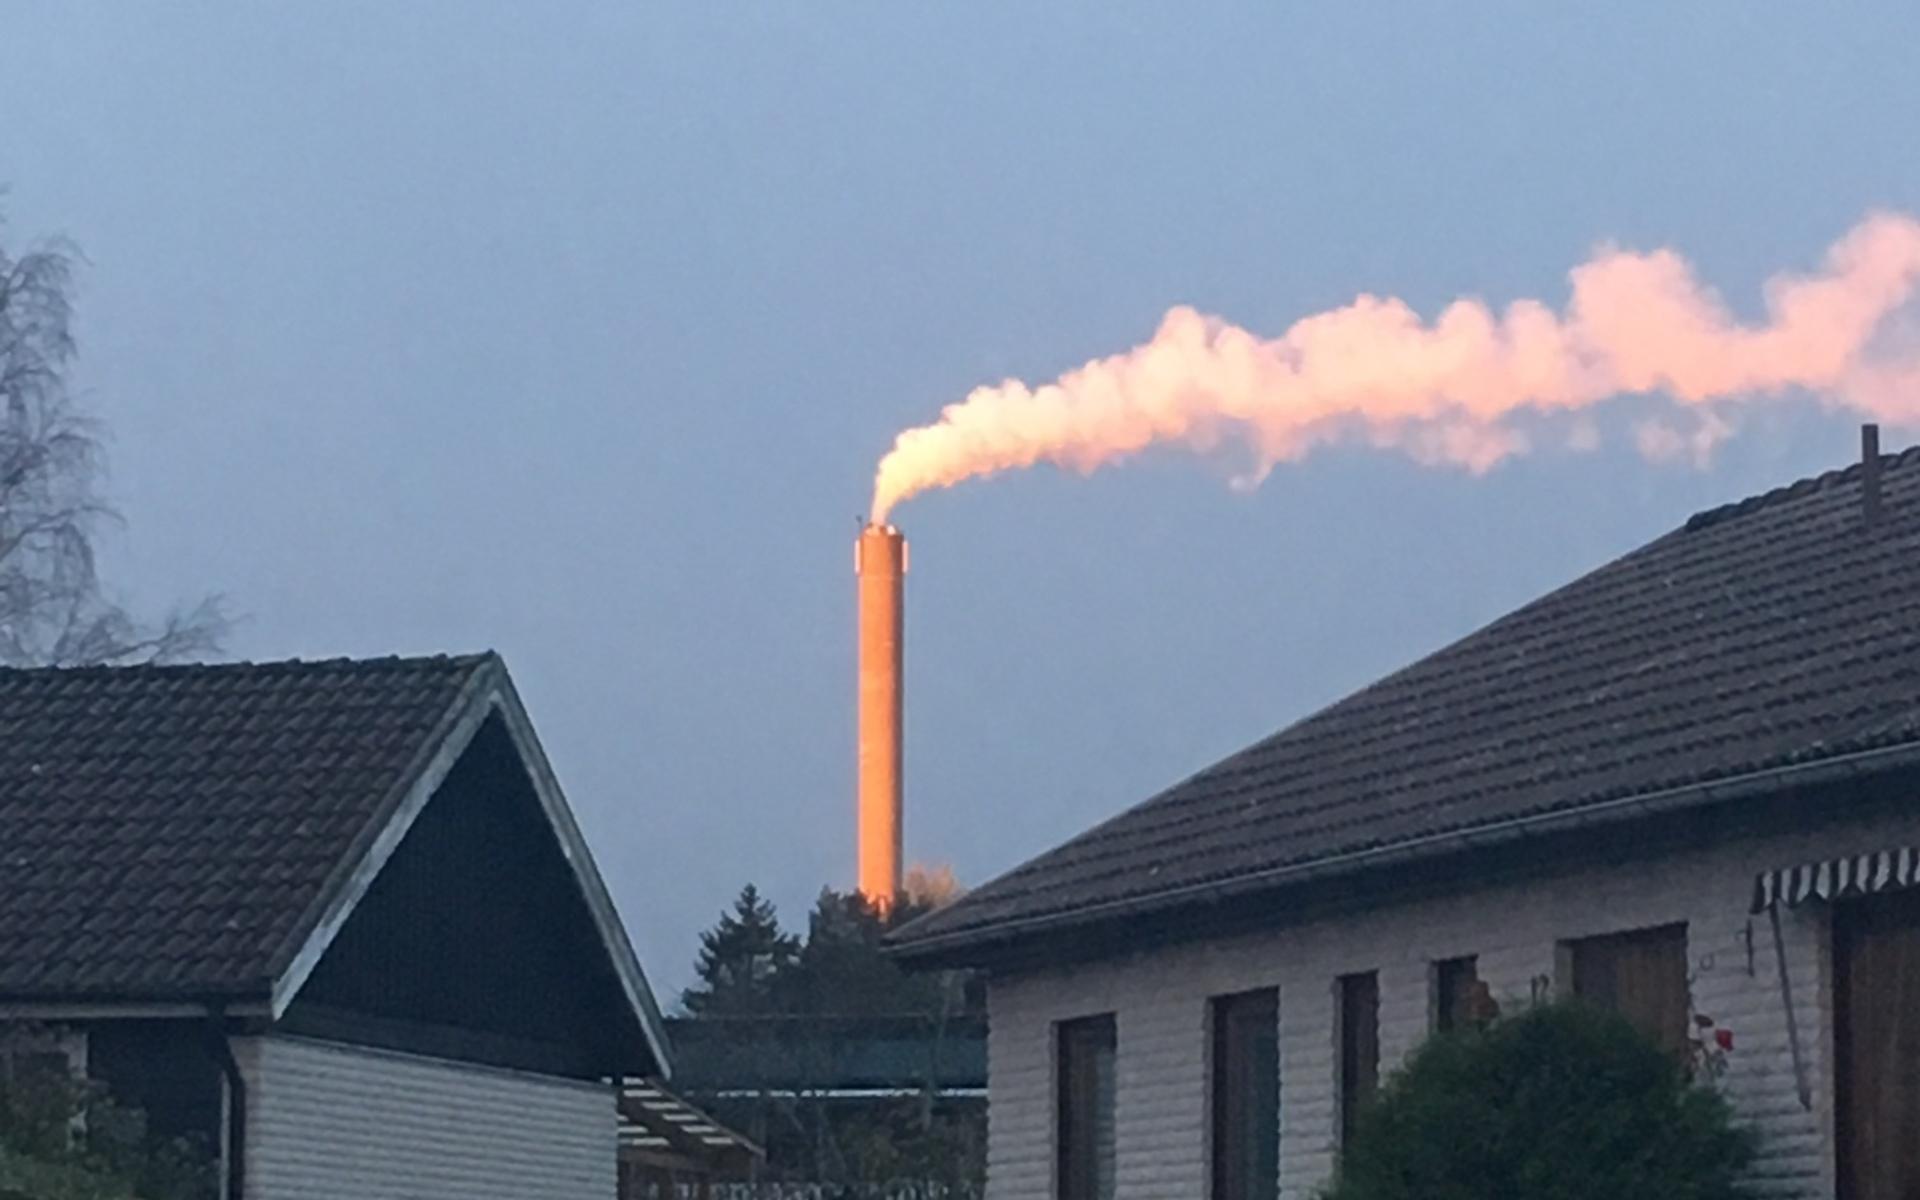 Det enda solen lös på i morse vid klockan 8.20 var vår skorsten på värmekraftverket i Lextorp, skriver Linda Johansson.